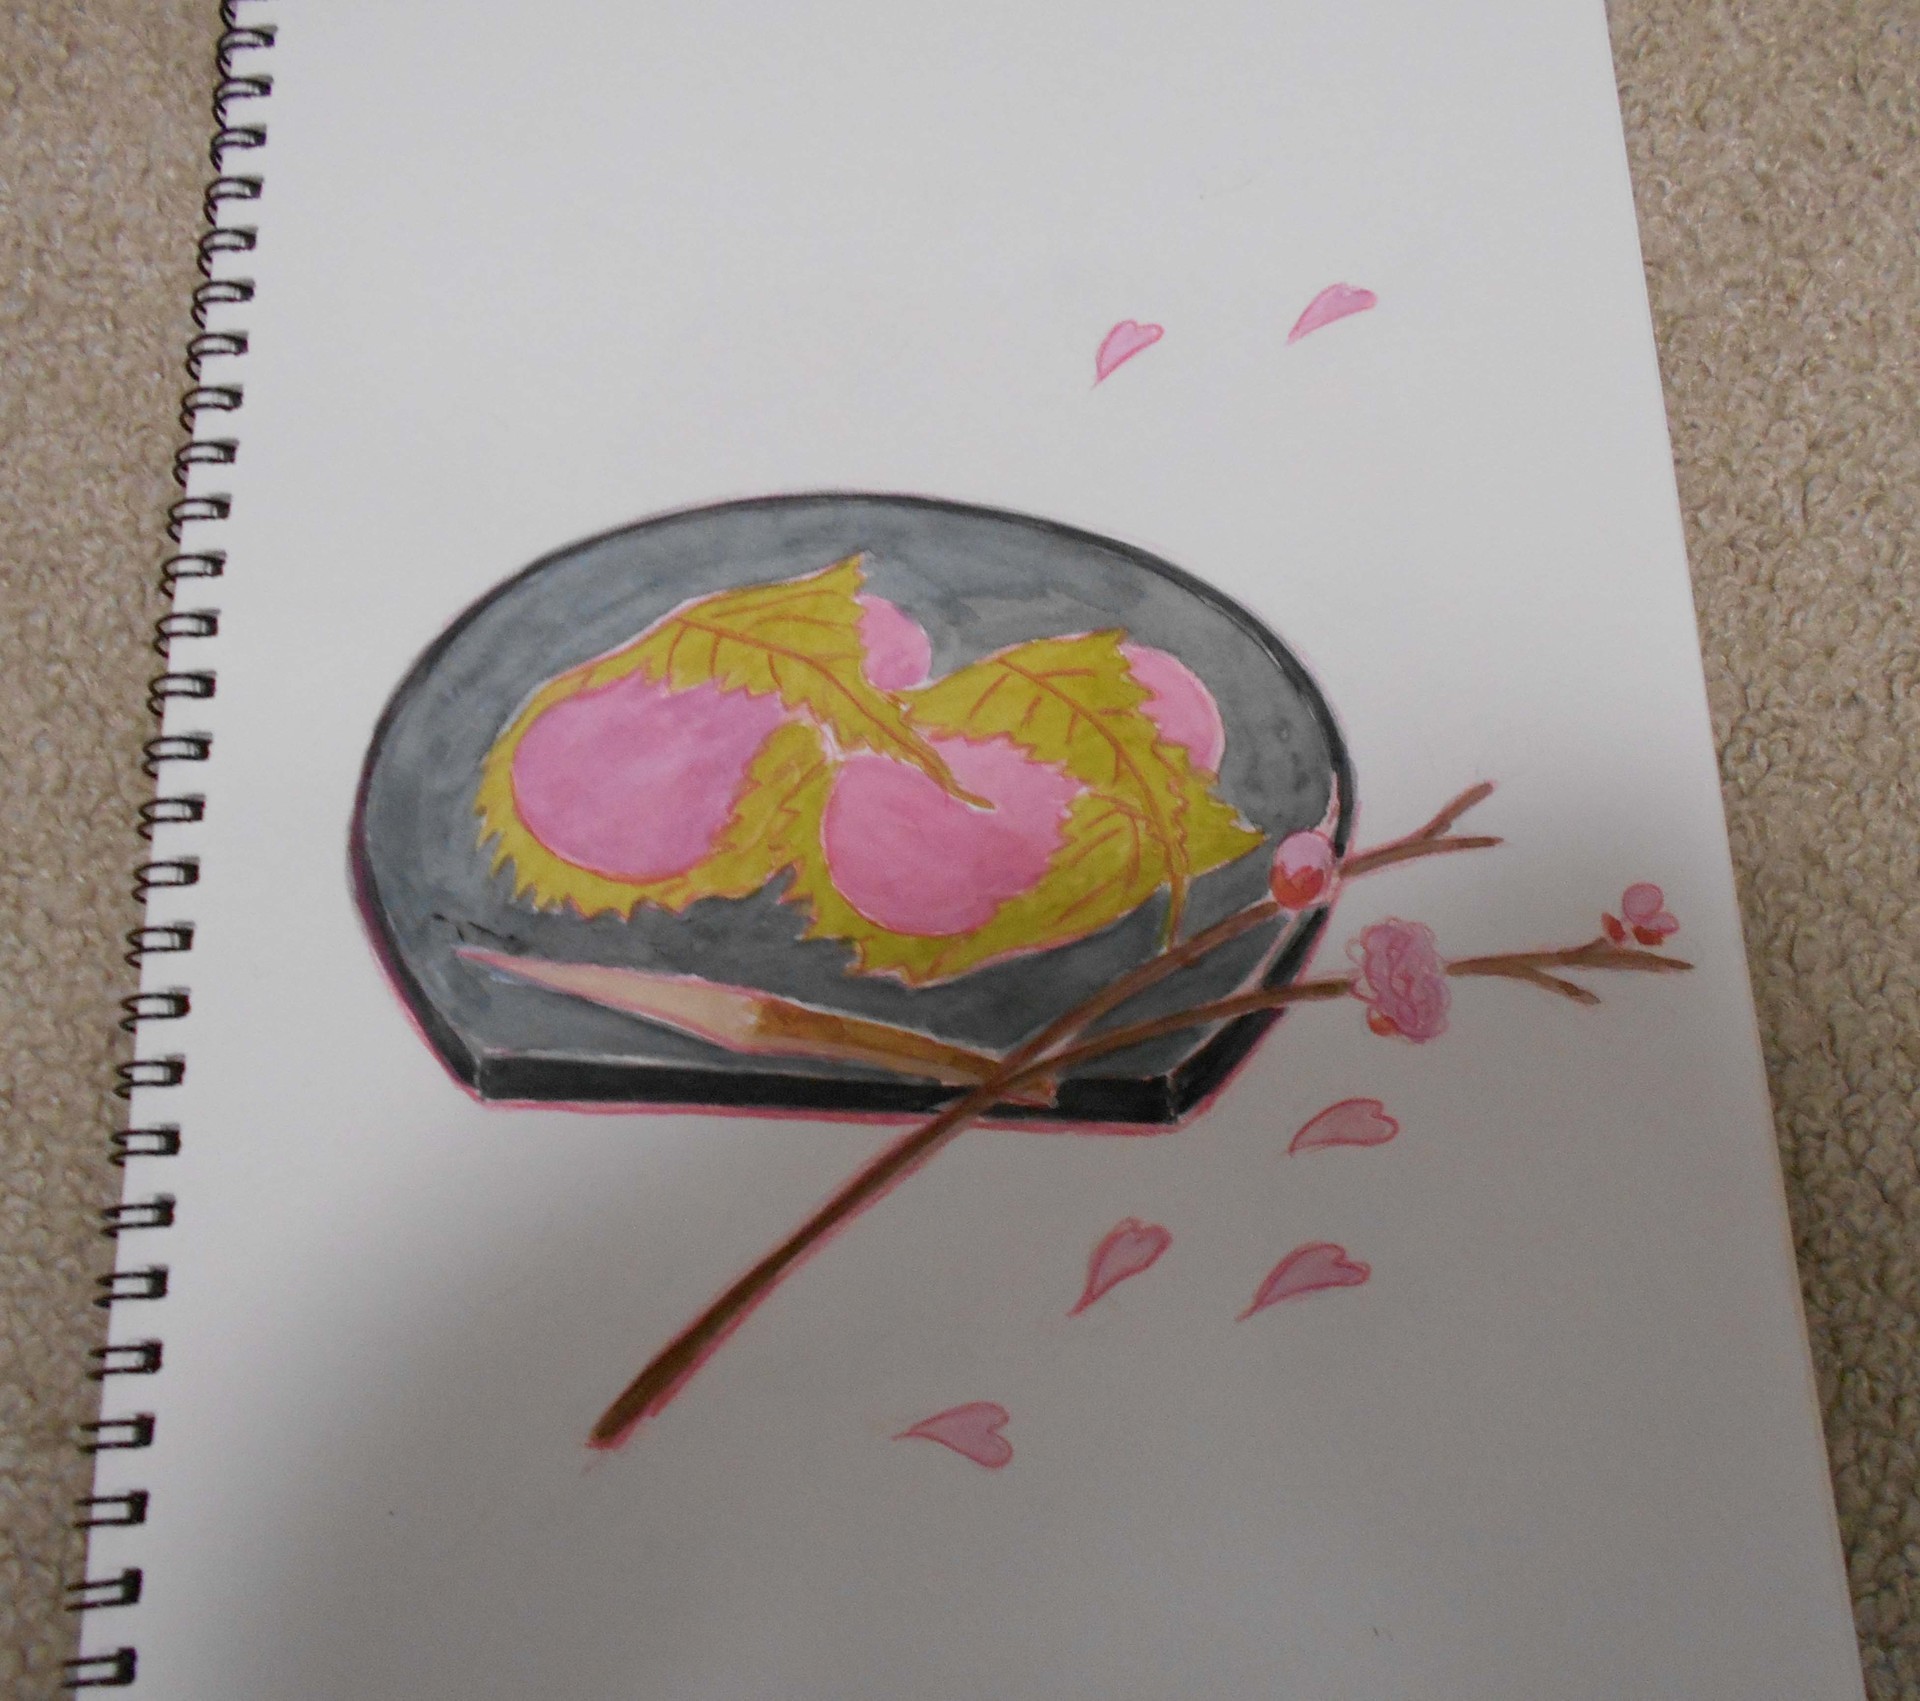 追加画像 イラスト 桜餅食べたい 透明水彩絵の具 色鉛筆一色 色々なママミミ日記